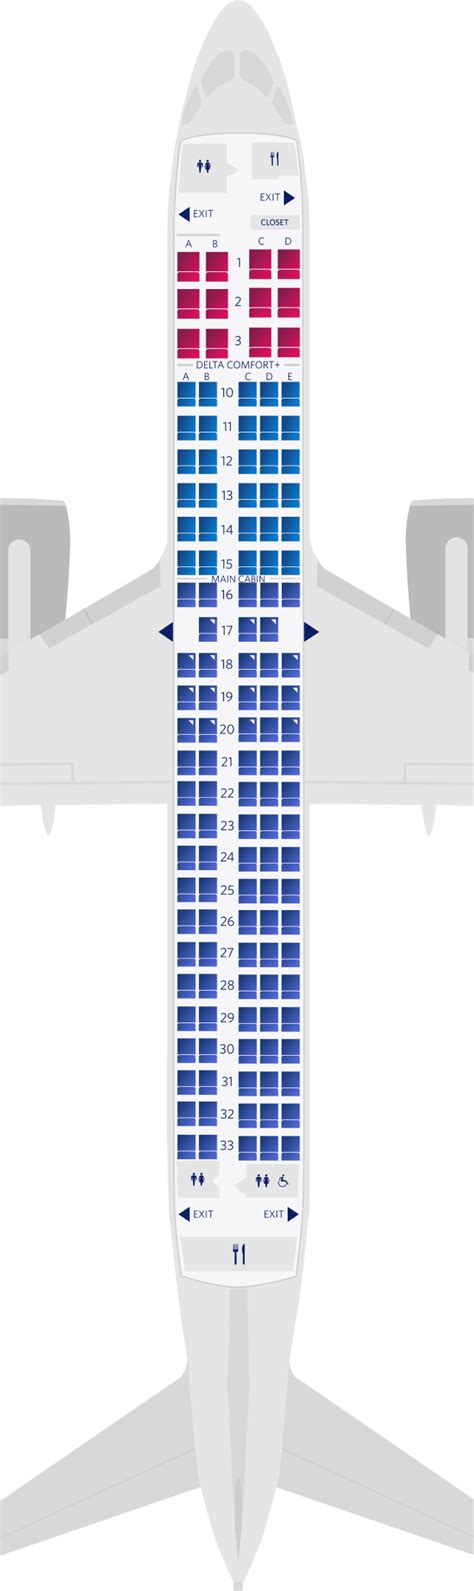 Airbus A Passenger Seat Map Image To U